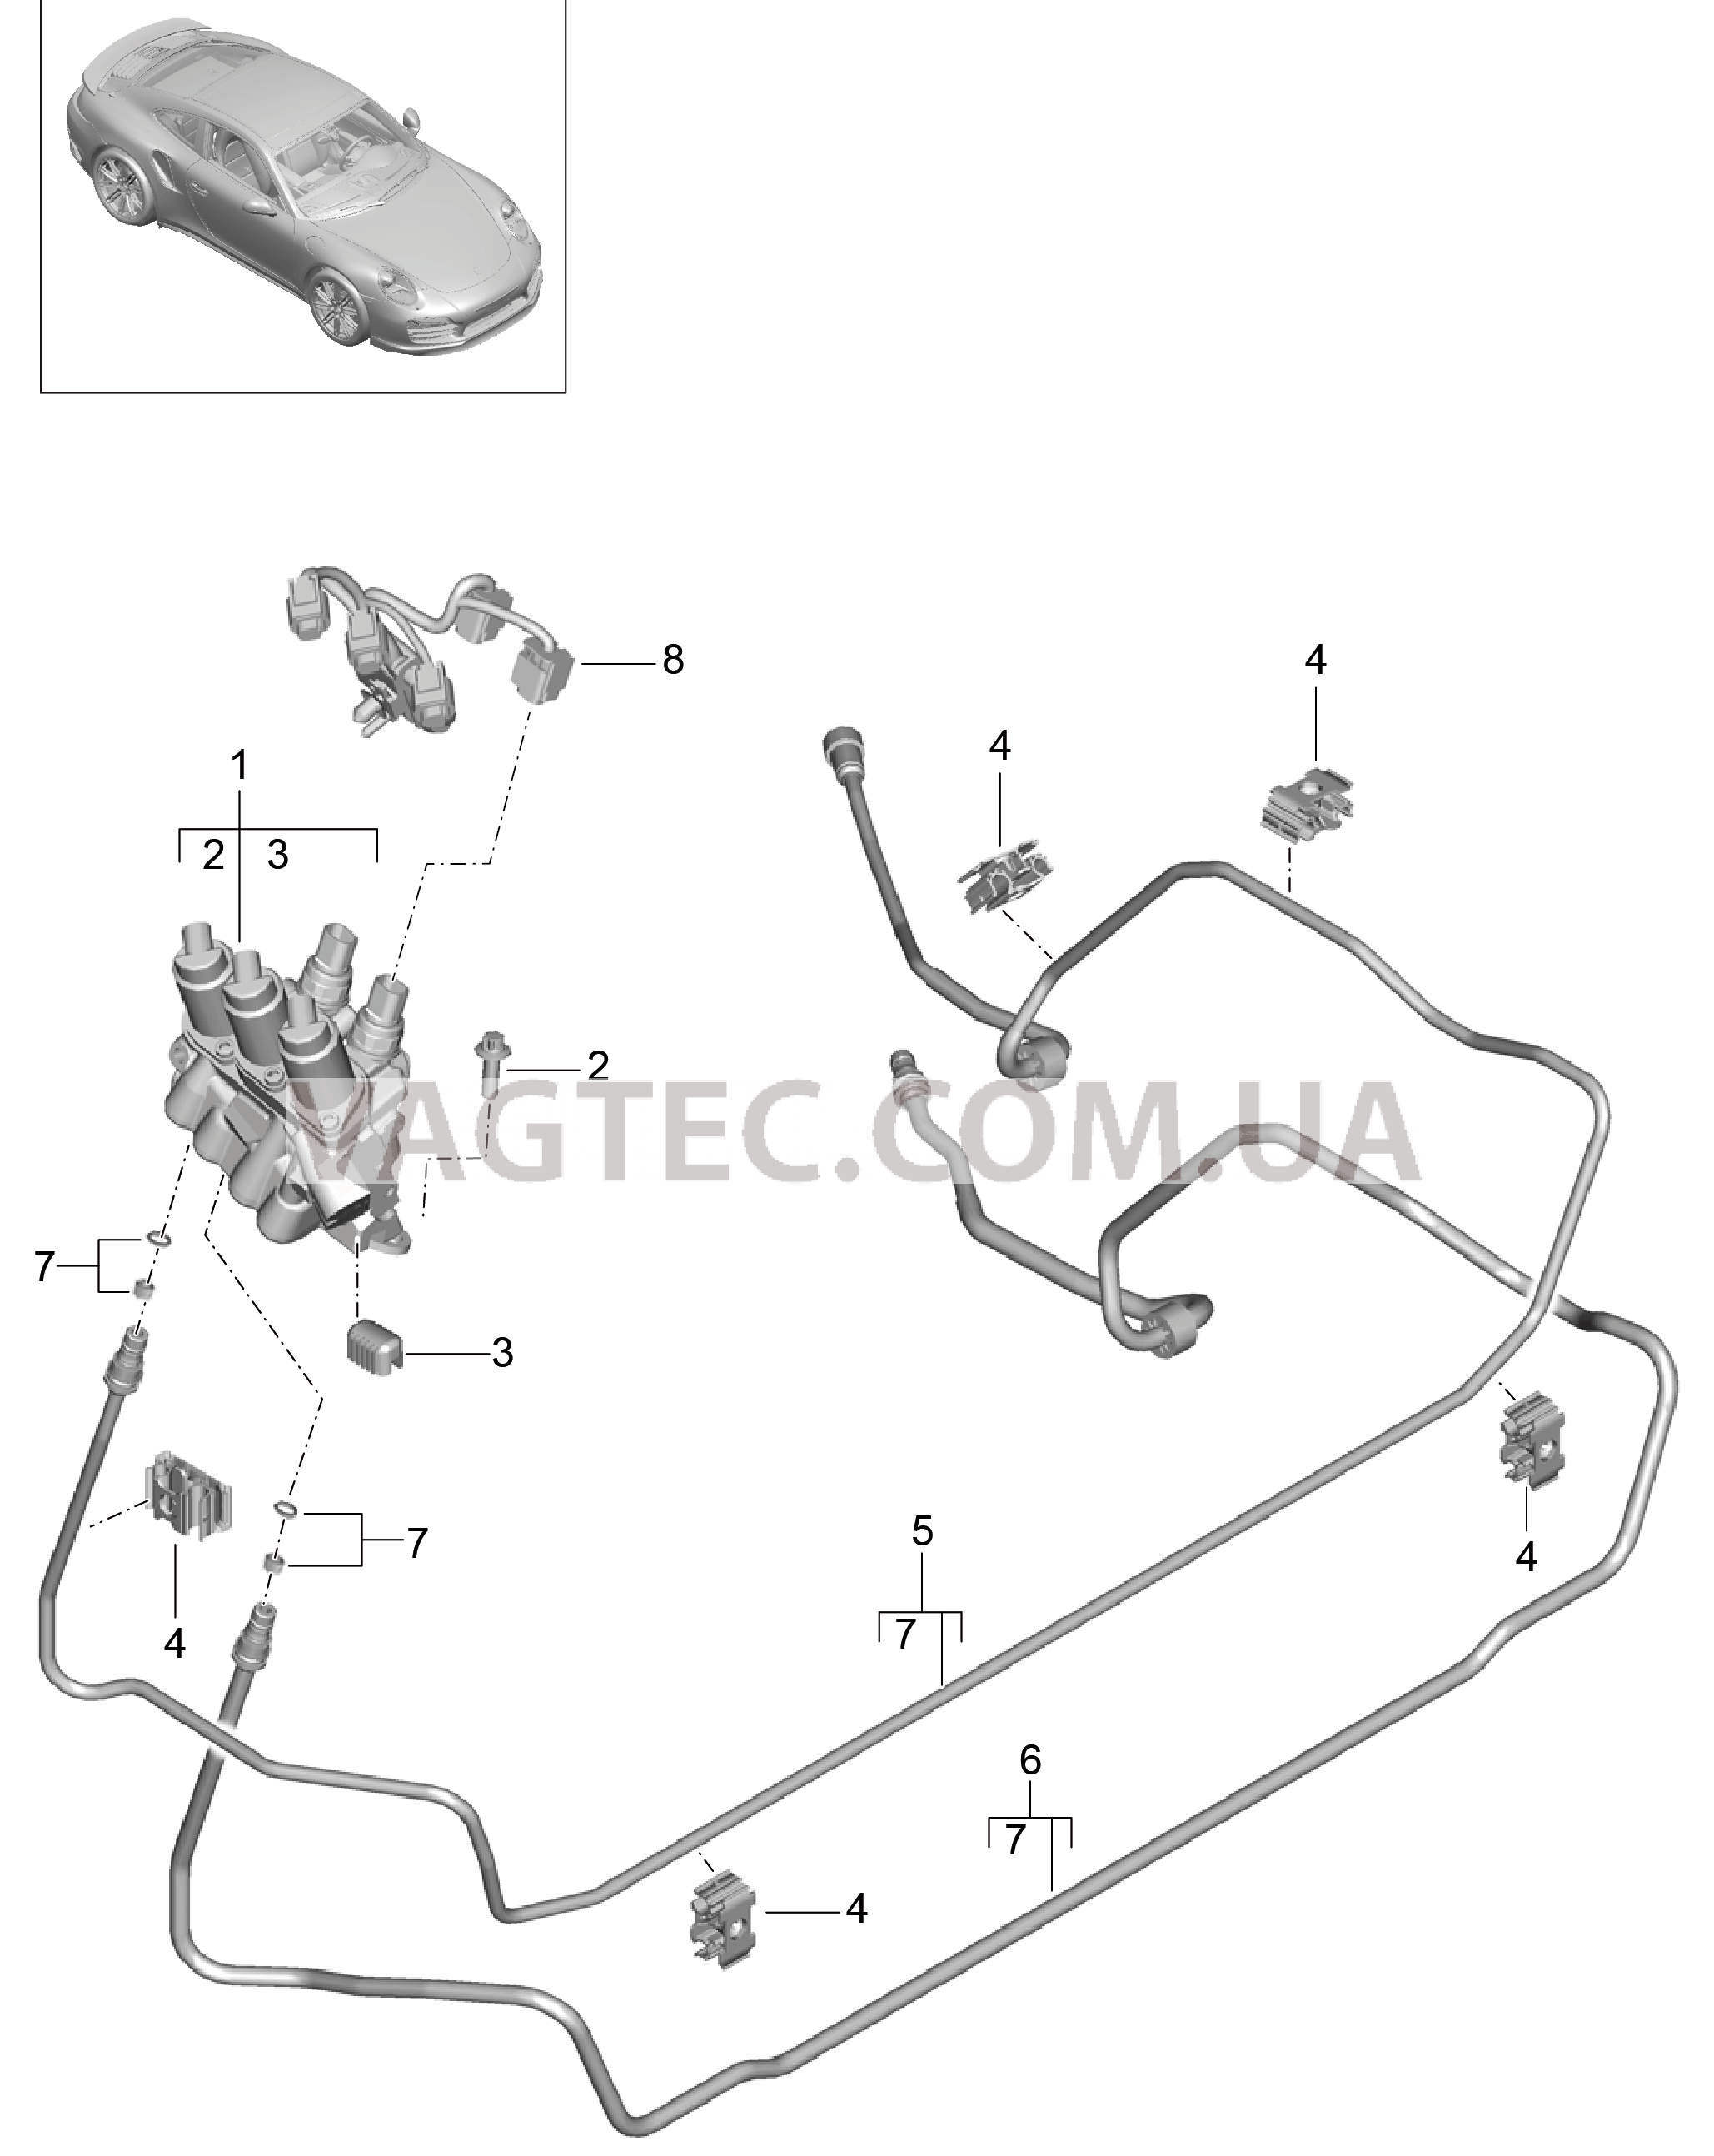 402-022 Линии, Блок клапанов, Передняя часть кузова, PDCC
						
						I031/352 для PORSCHE Porsche991Turbo 2014-2017USA